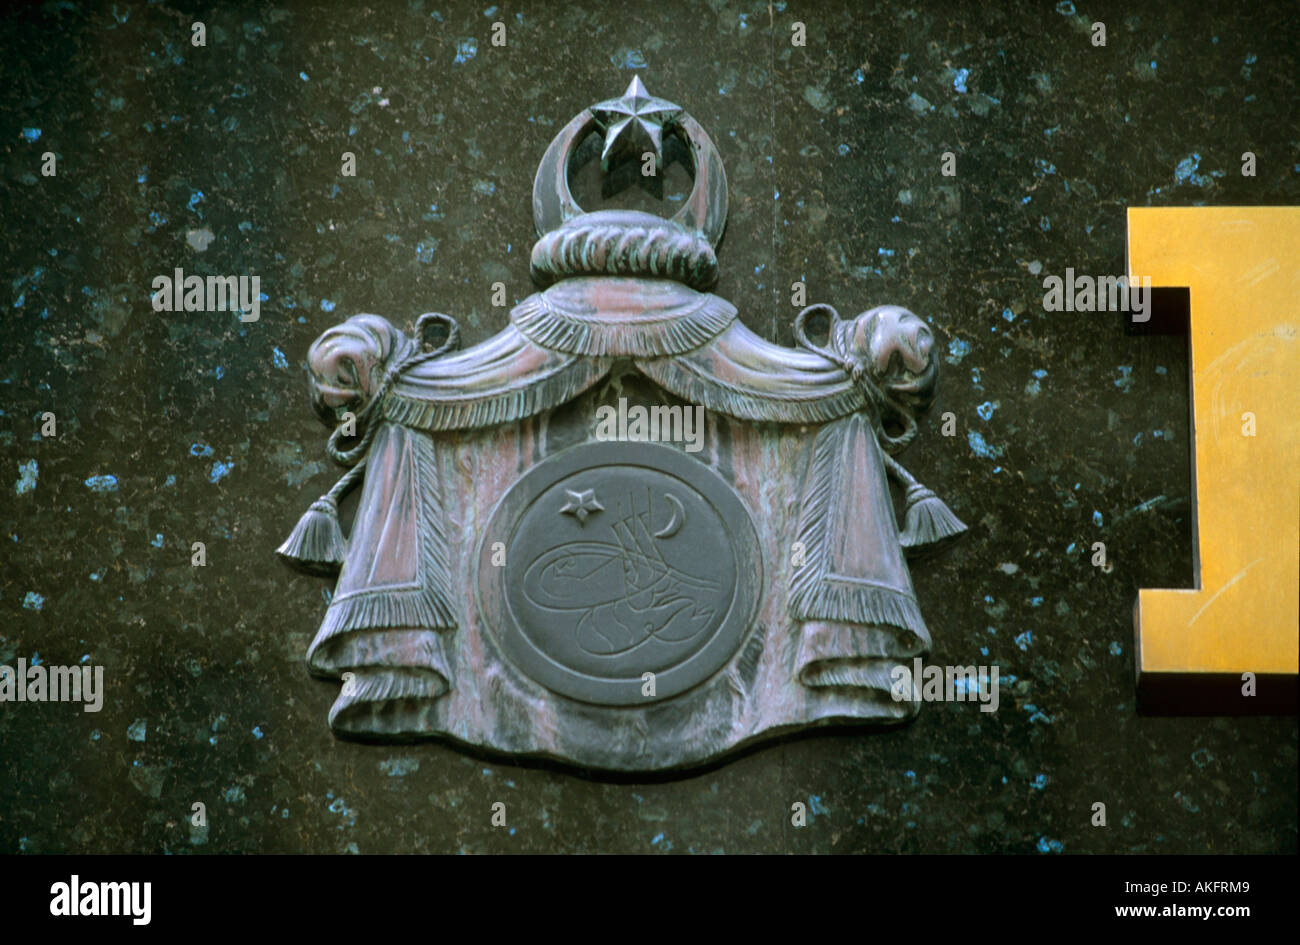 Österreich, Wien I, Graben, Herrenausstatter Knize, Geschäft vom Architekten Adolf Loos, osmanisches Wappen Stock Photo